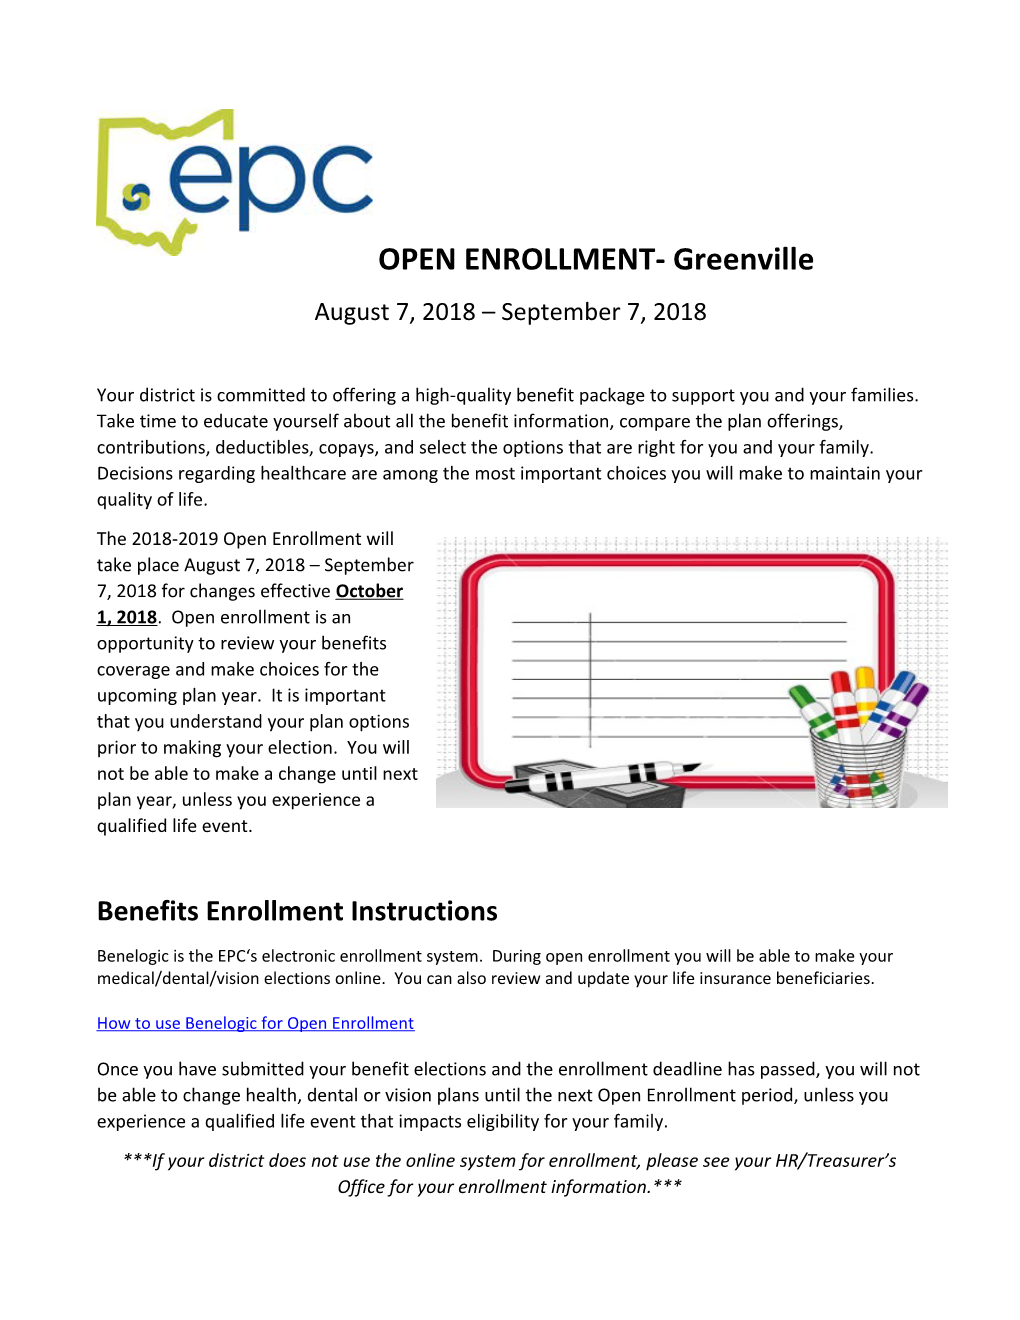 Benefits Enrollment Instructions